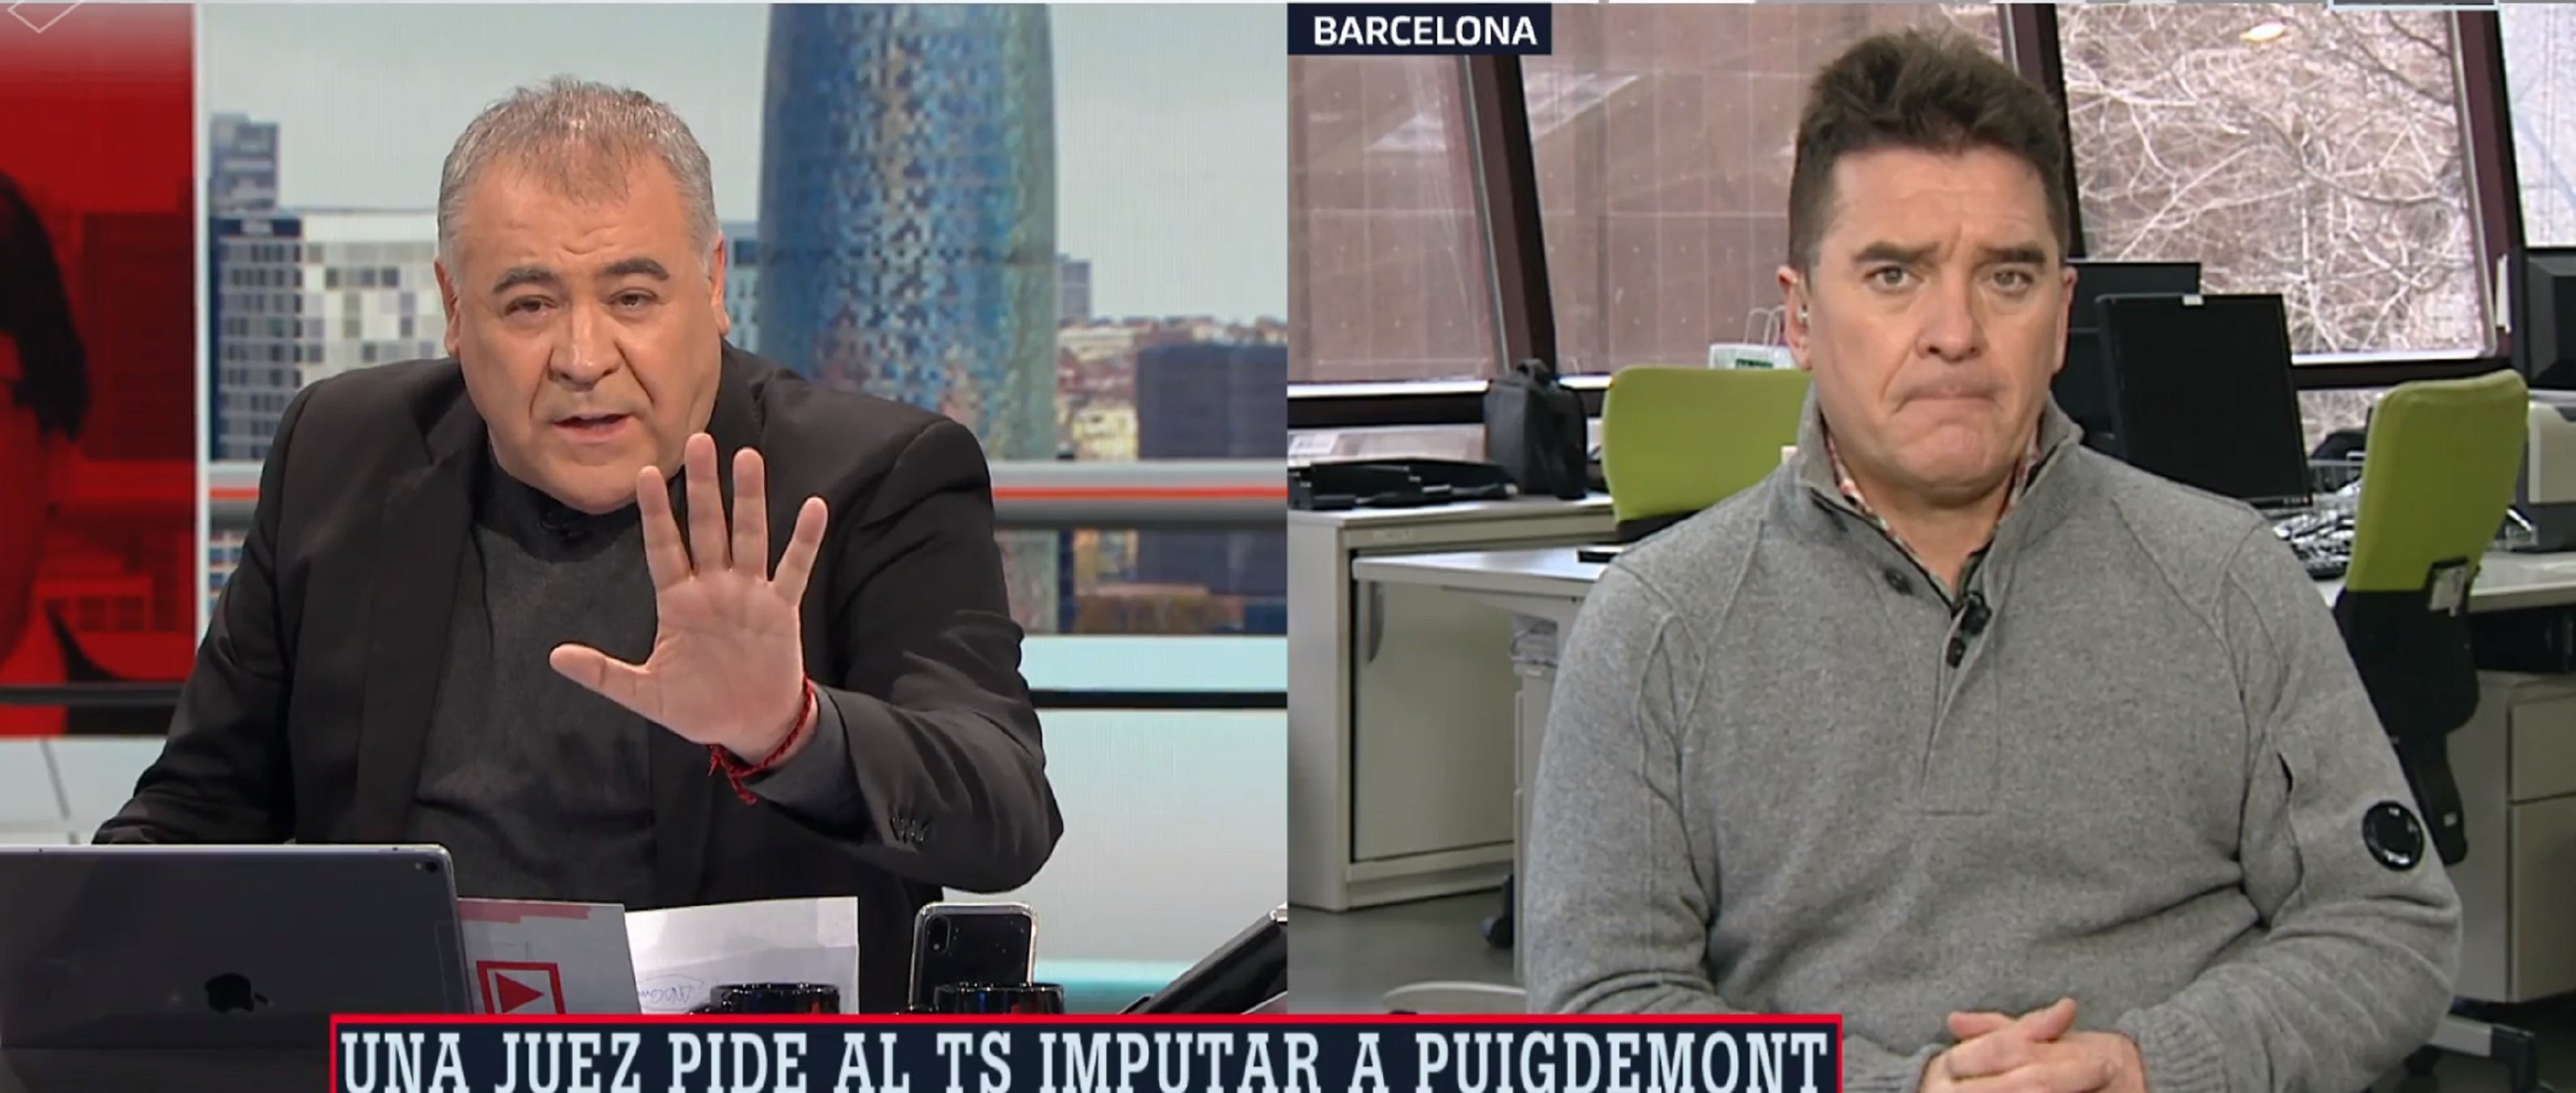 Ferreras i Quílez, desesperats: "Extraditaremos a Puigdemont por corrupción"